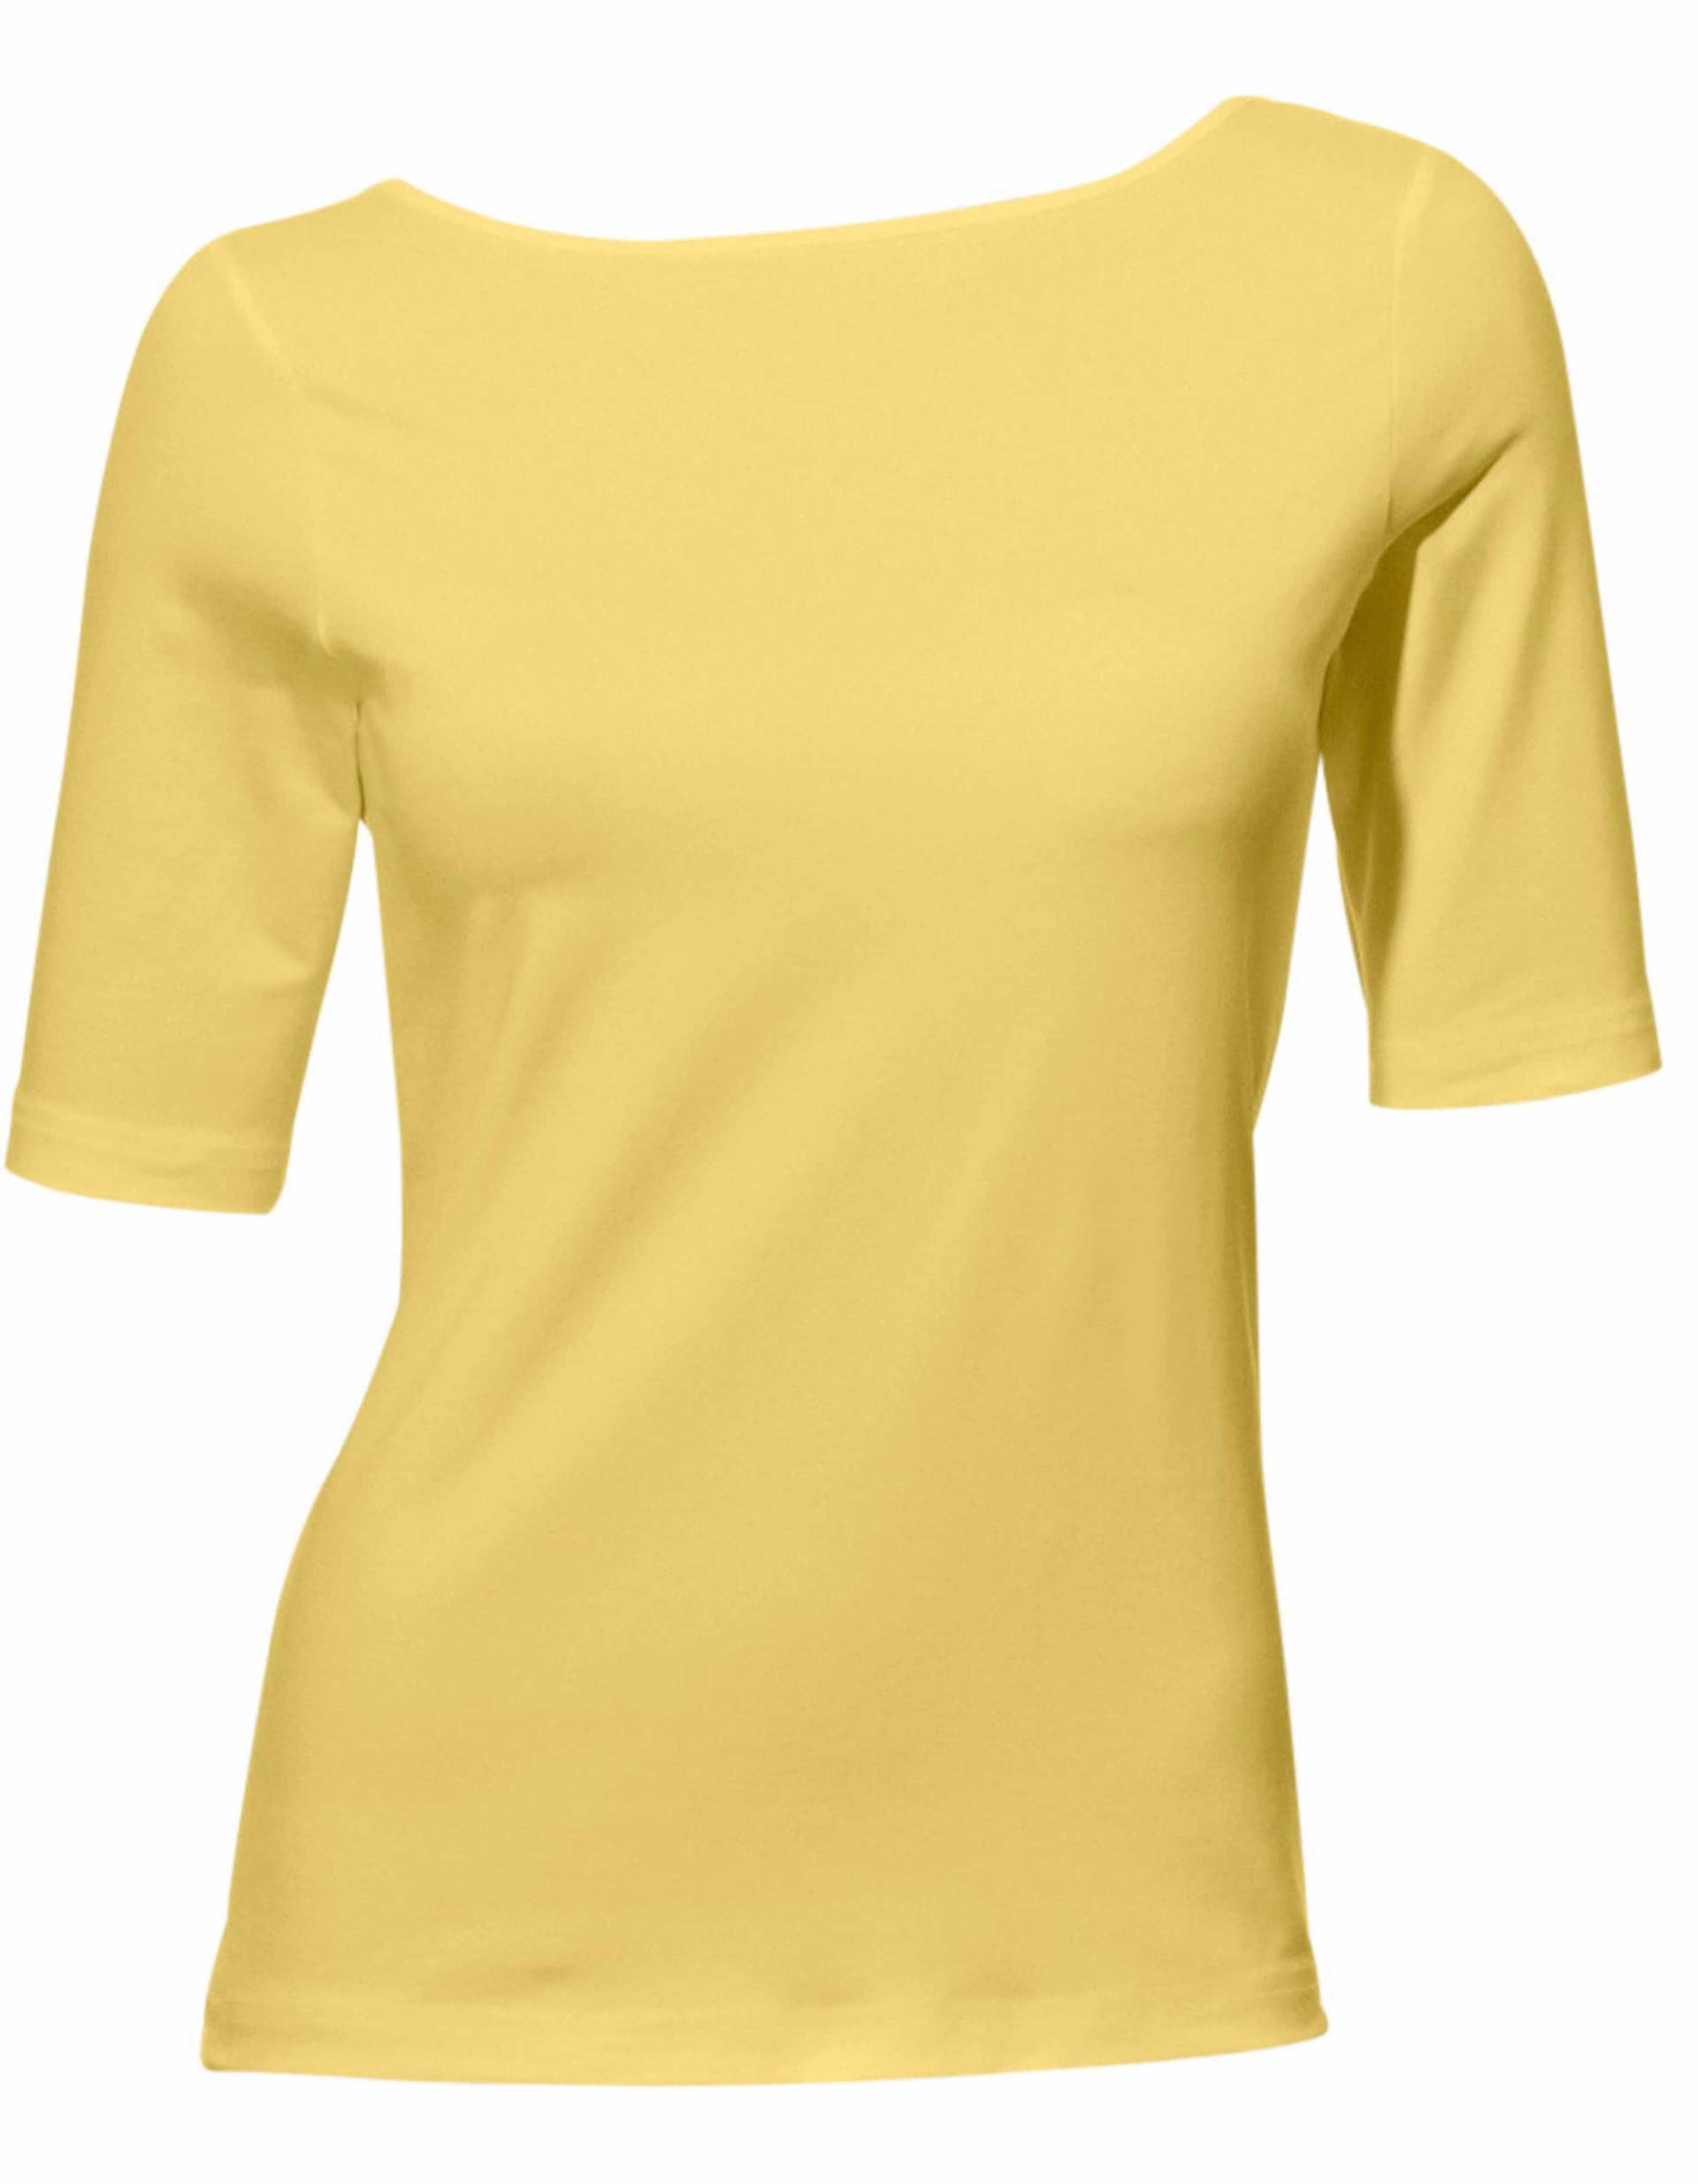 U-Boot-Shirt in gelb von heine